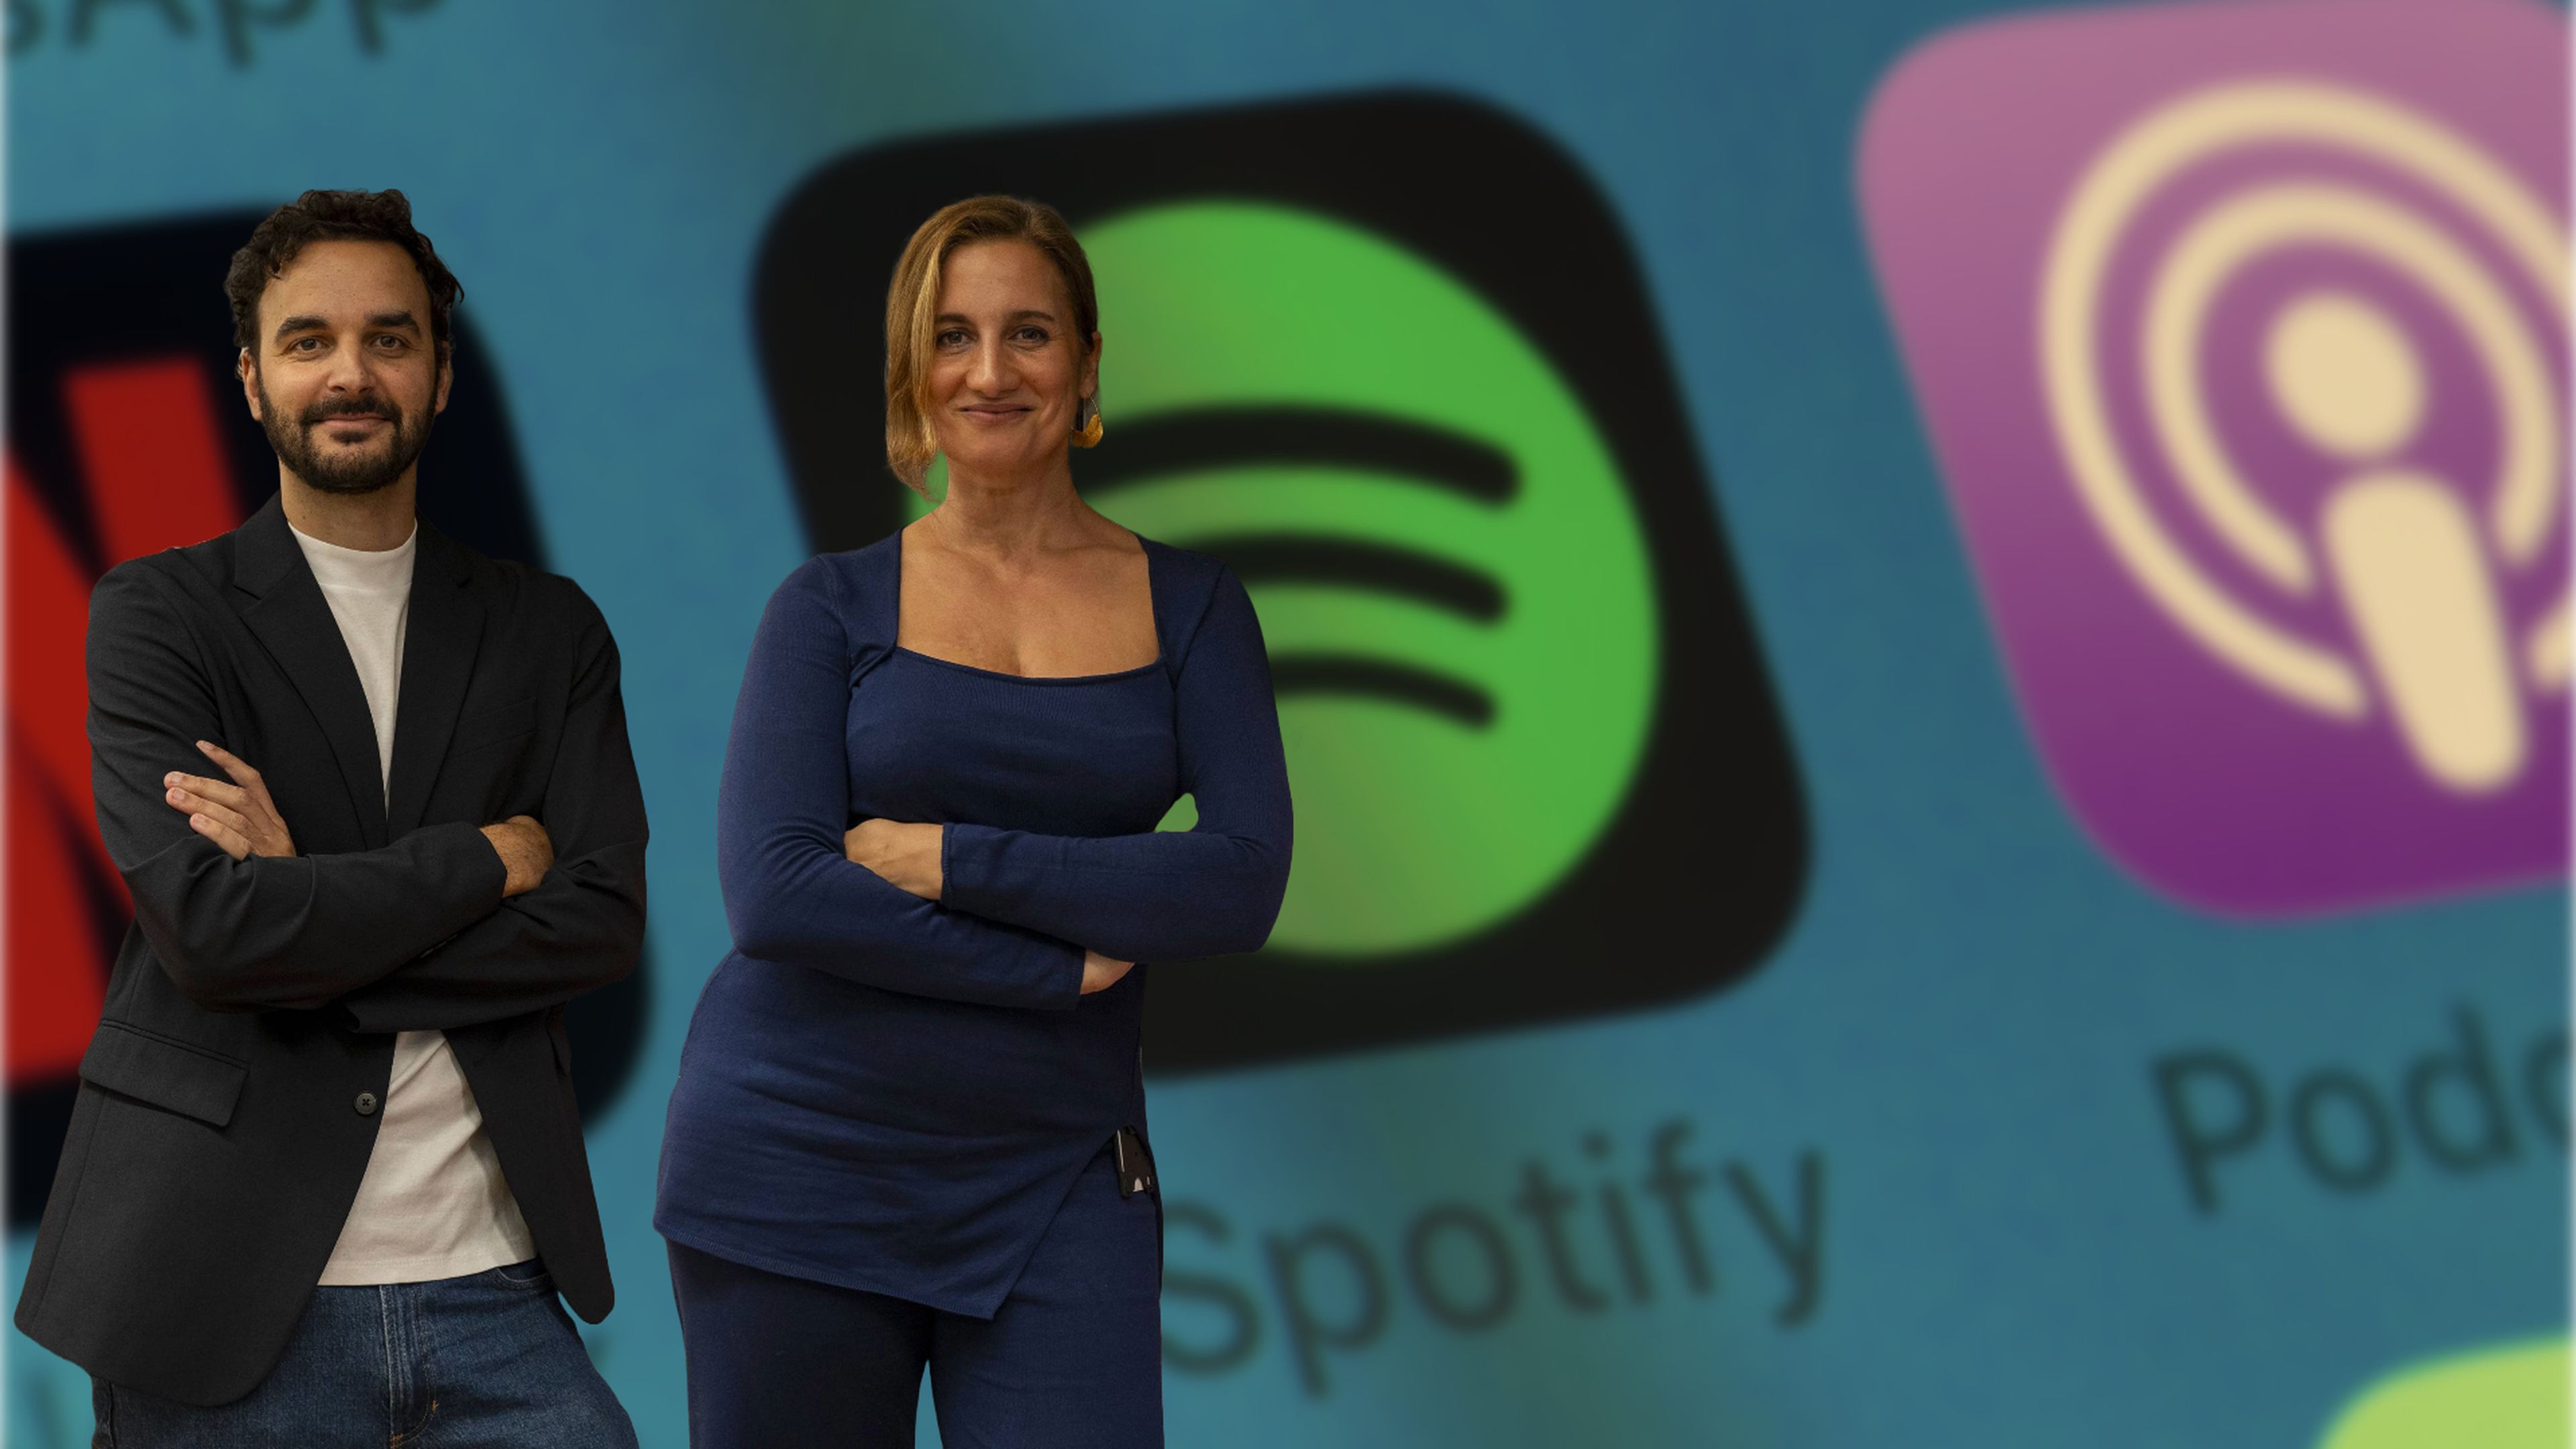 Eduardo Alonso, responsable de podcast para el sur y este de Europa en Spotify, y Melanie Parejo, responsable de Música para el sur y este de Europa en Spotify.